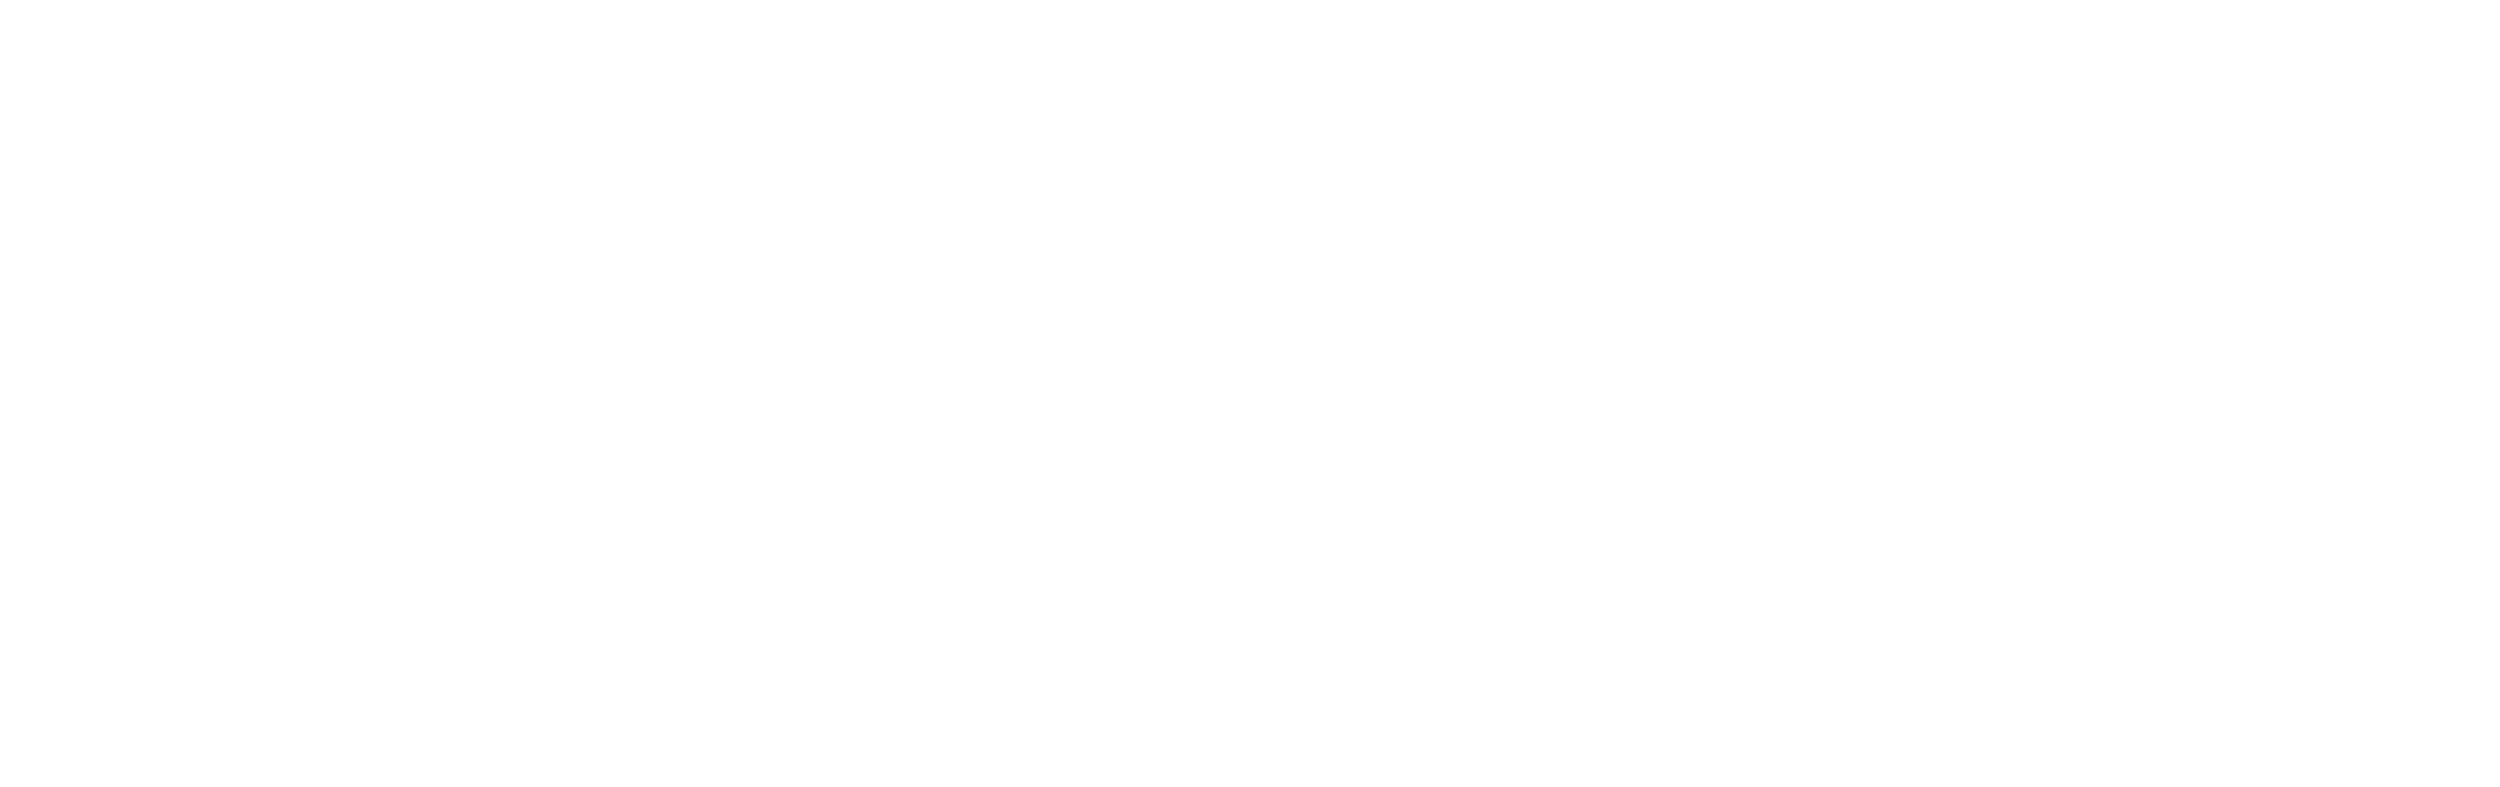 Kennedy Wood Marketing